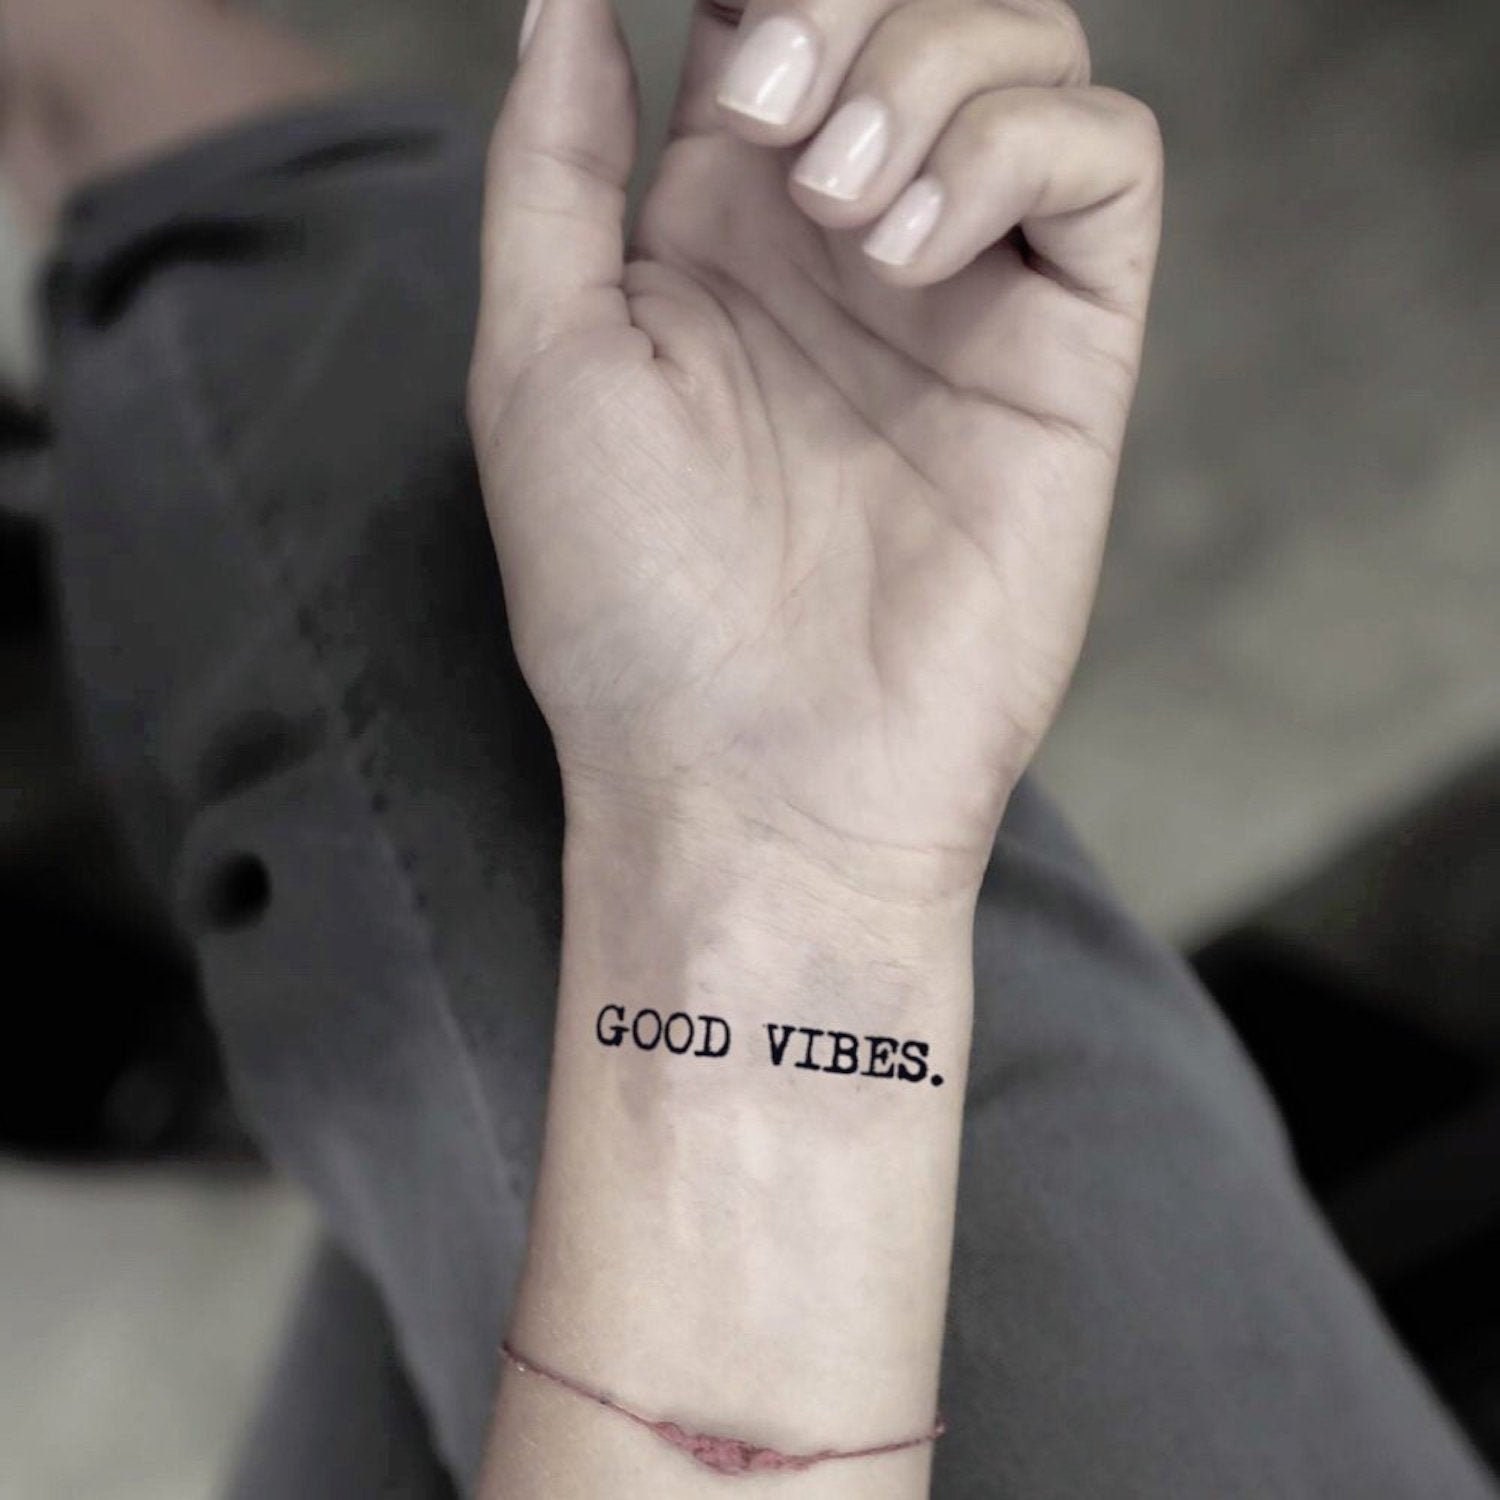 Tattoo uploaded by Rafaela Marchetti • Lettering delicado por Caio Cruz!  #CaioCruz #tatuadoresbrasileiros #lettering #letteringtattoo  #letteringartist #customlettering #delicate #delicatetattoo #goodvibes •  Tattoodo